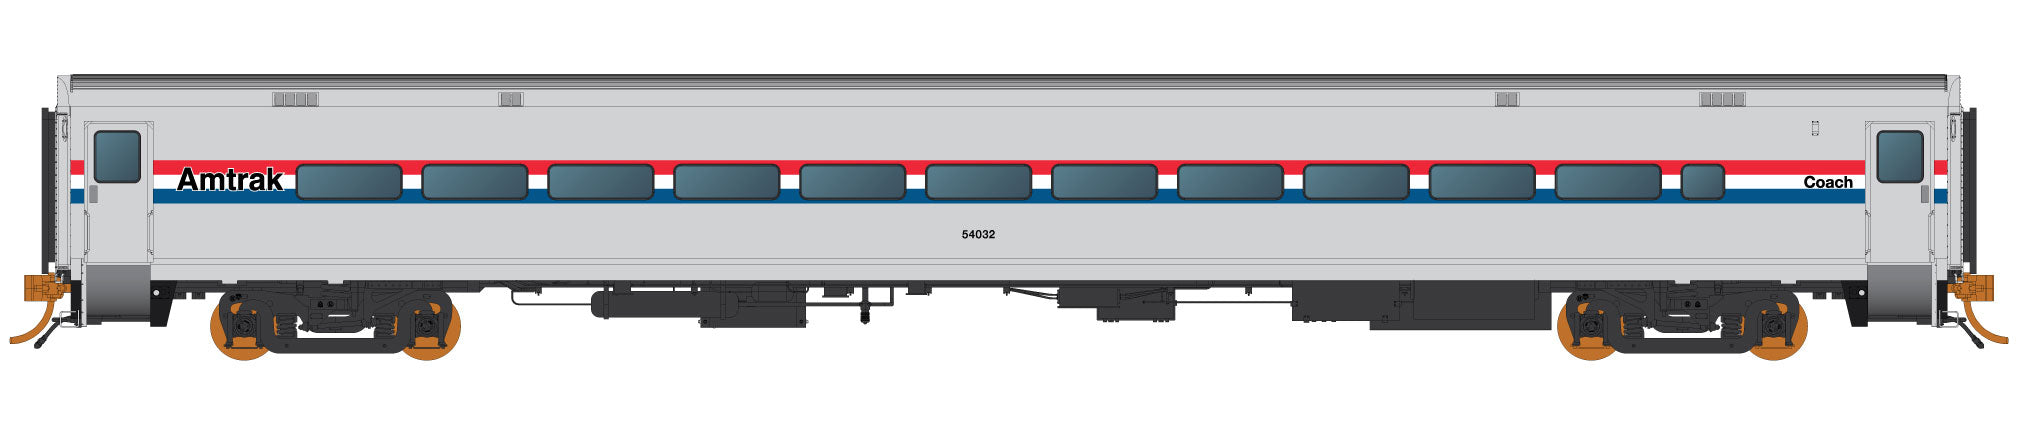 Raipido HO Scale Amtrak Horizon Passenger Cars